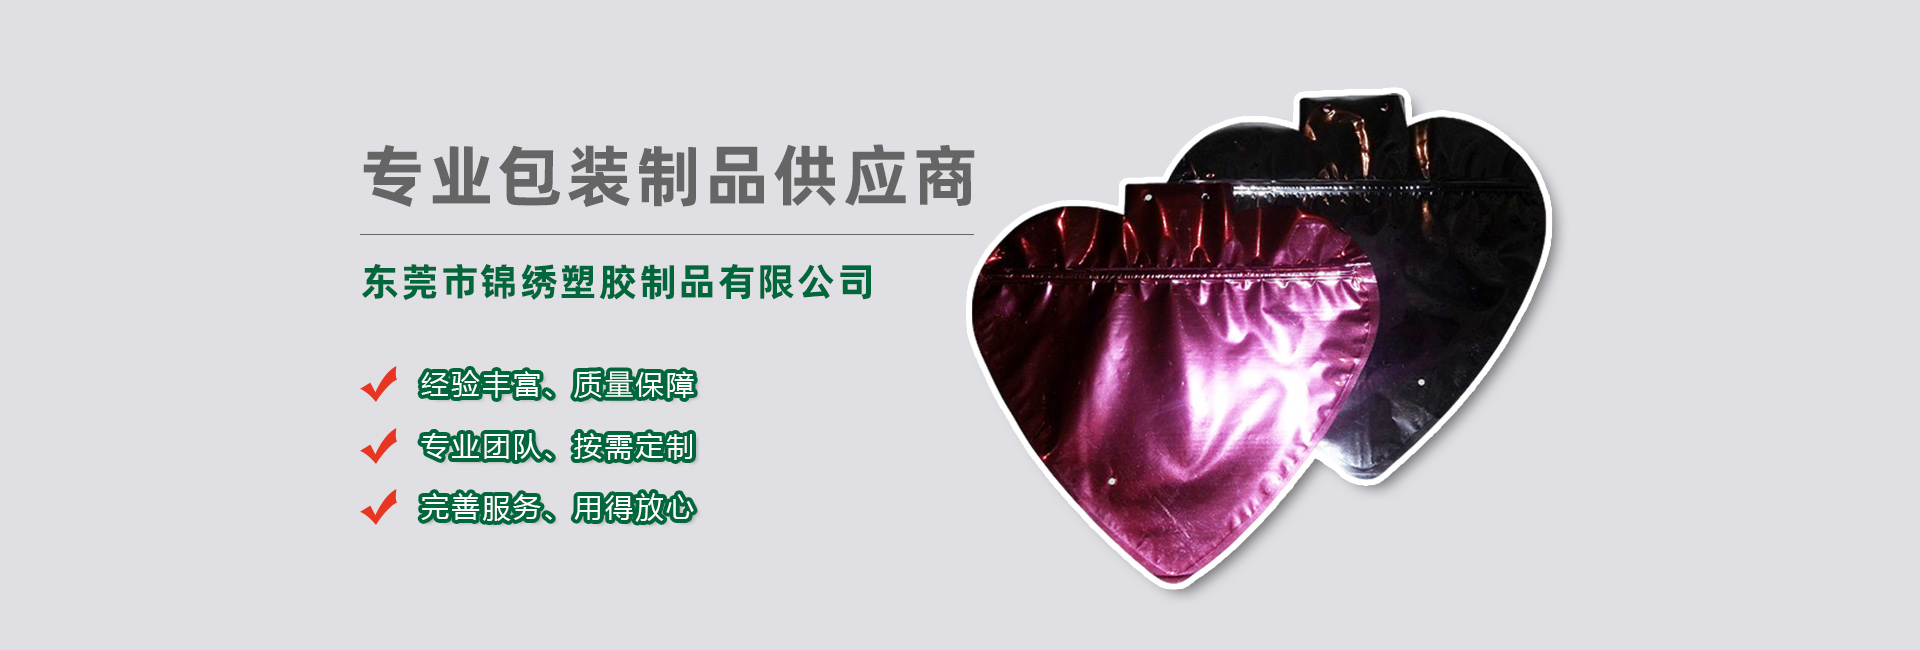 丽江食品袋banner